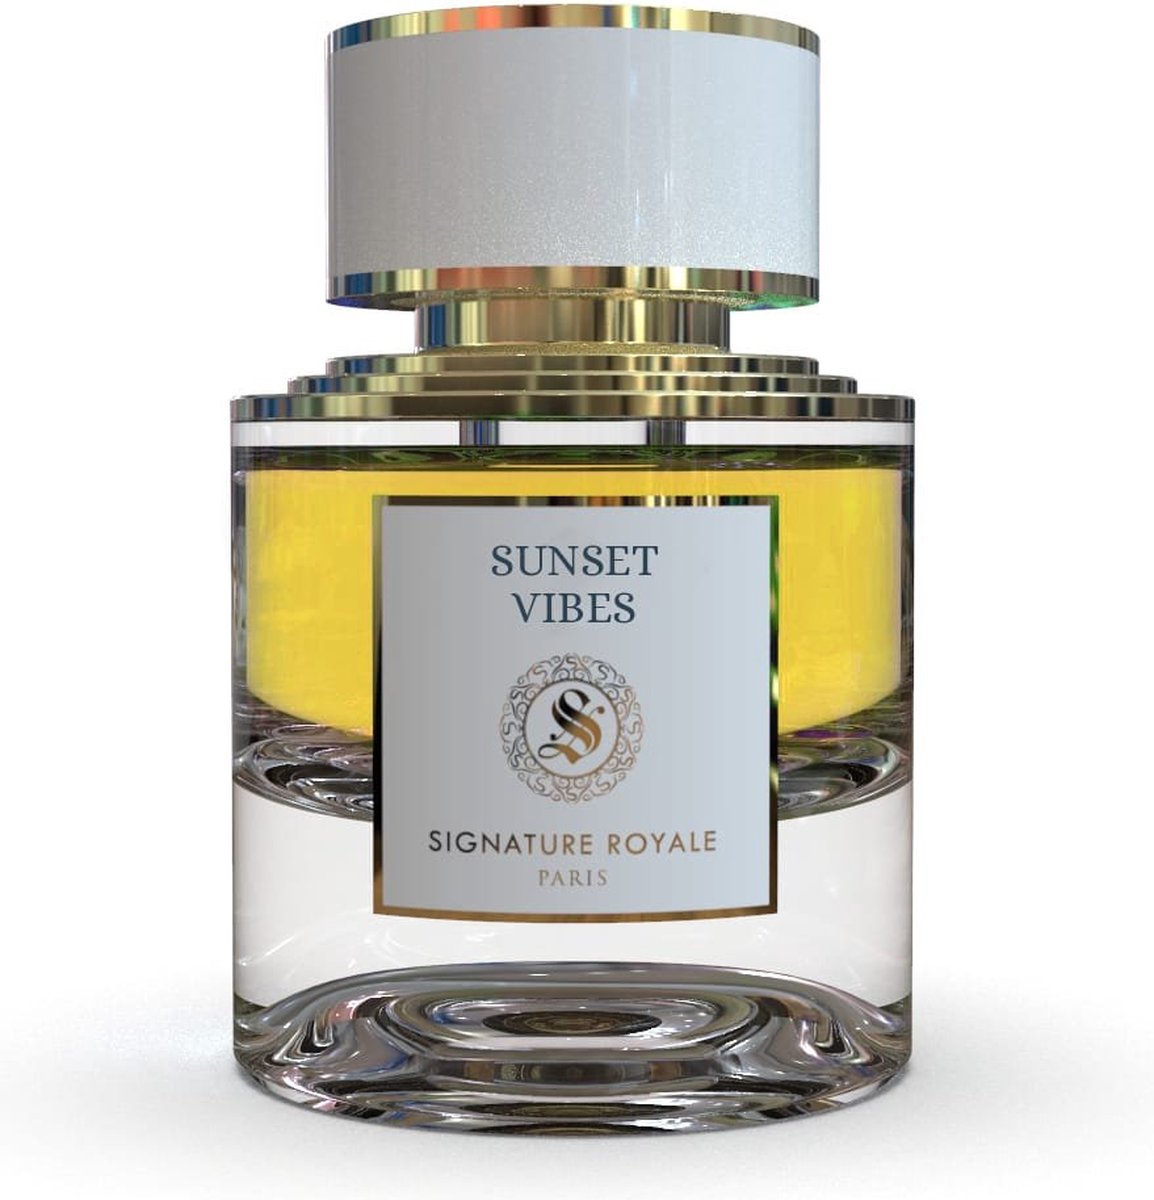 Signature Royale Sunset Vibes - Extrait de Parfum - 50 ml